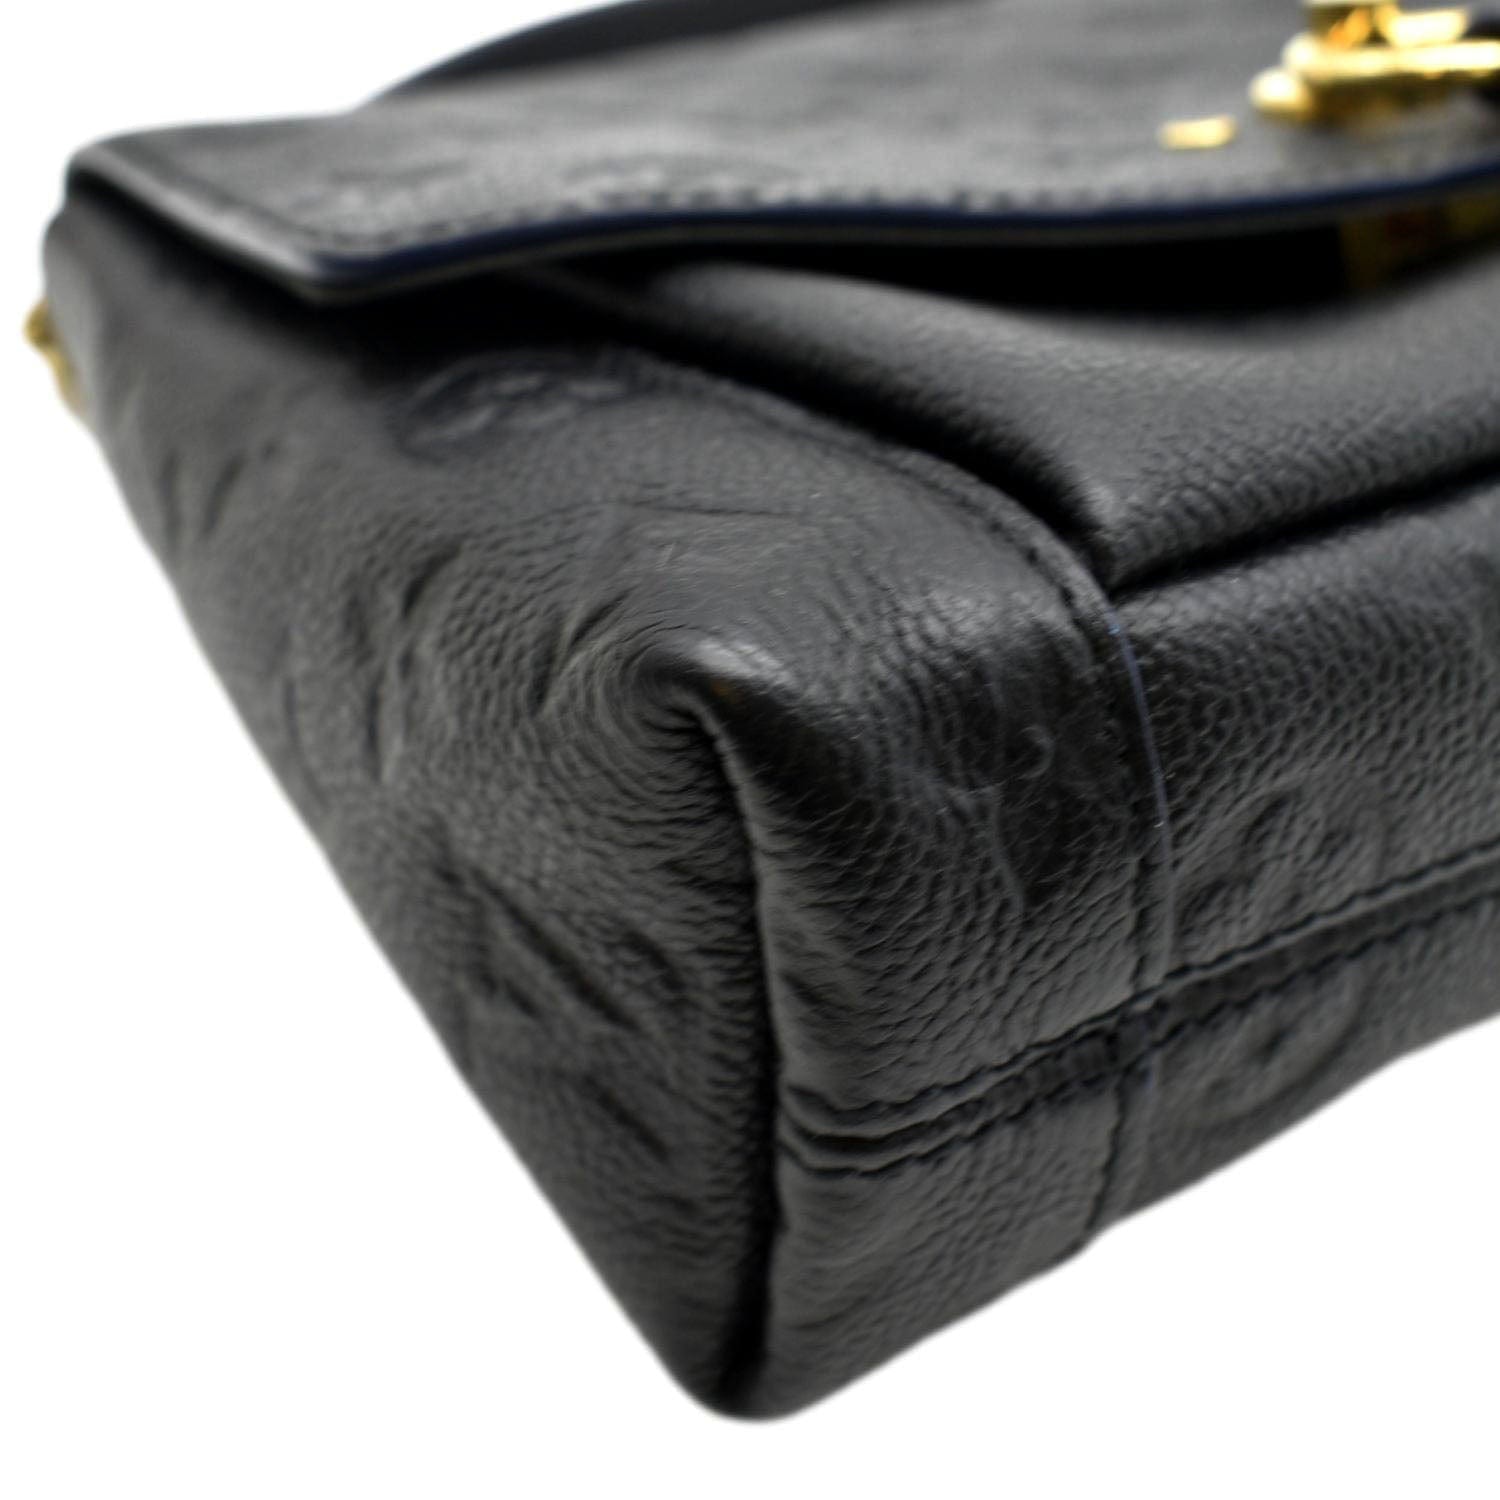 LOUIS VUITTON Blanche BB Empreinte Leather Shoulder Bag Black